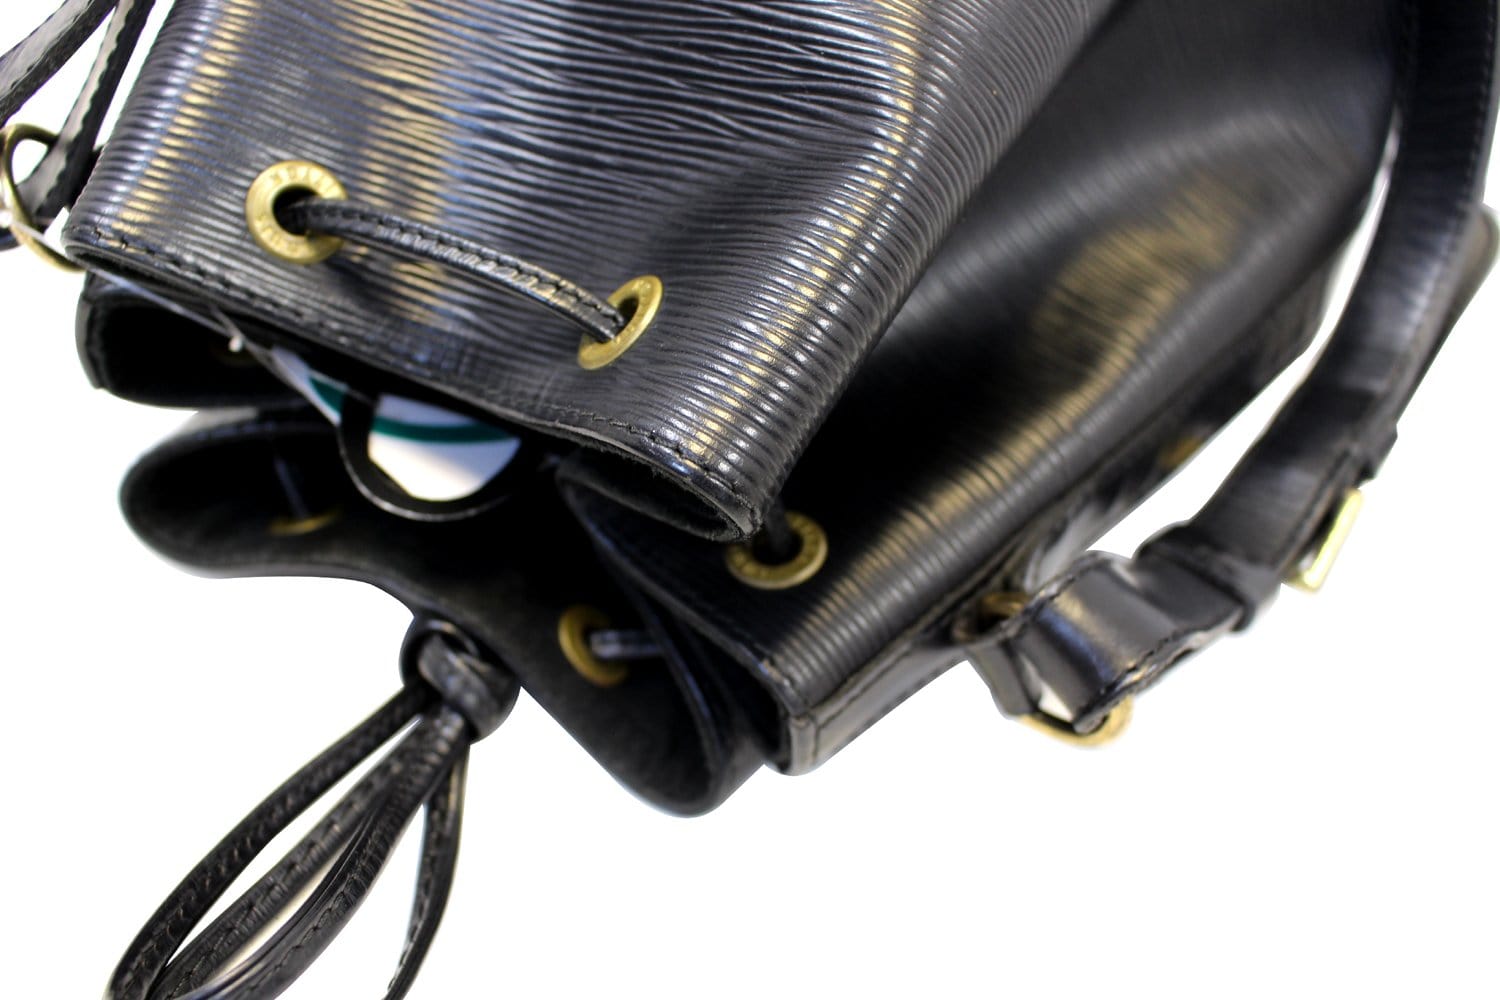 Louis Vuitton Cognac Epi Leather Noe Bag – JDEX Styles